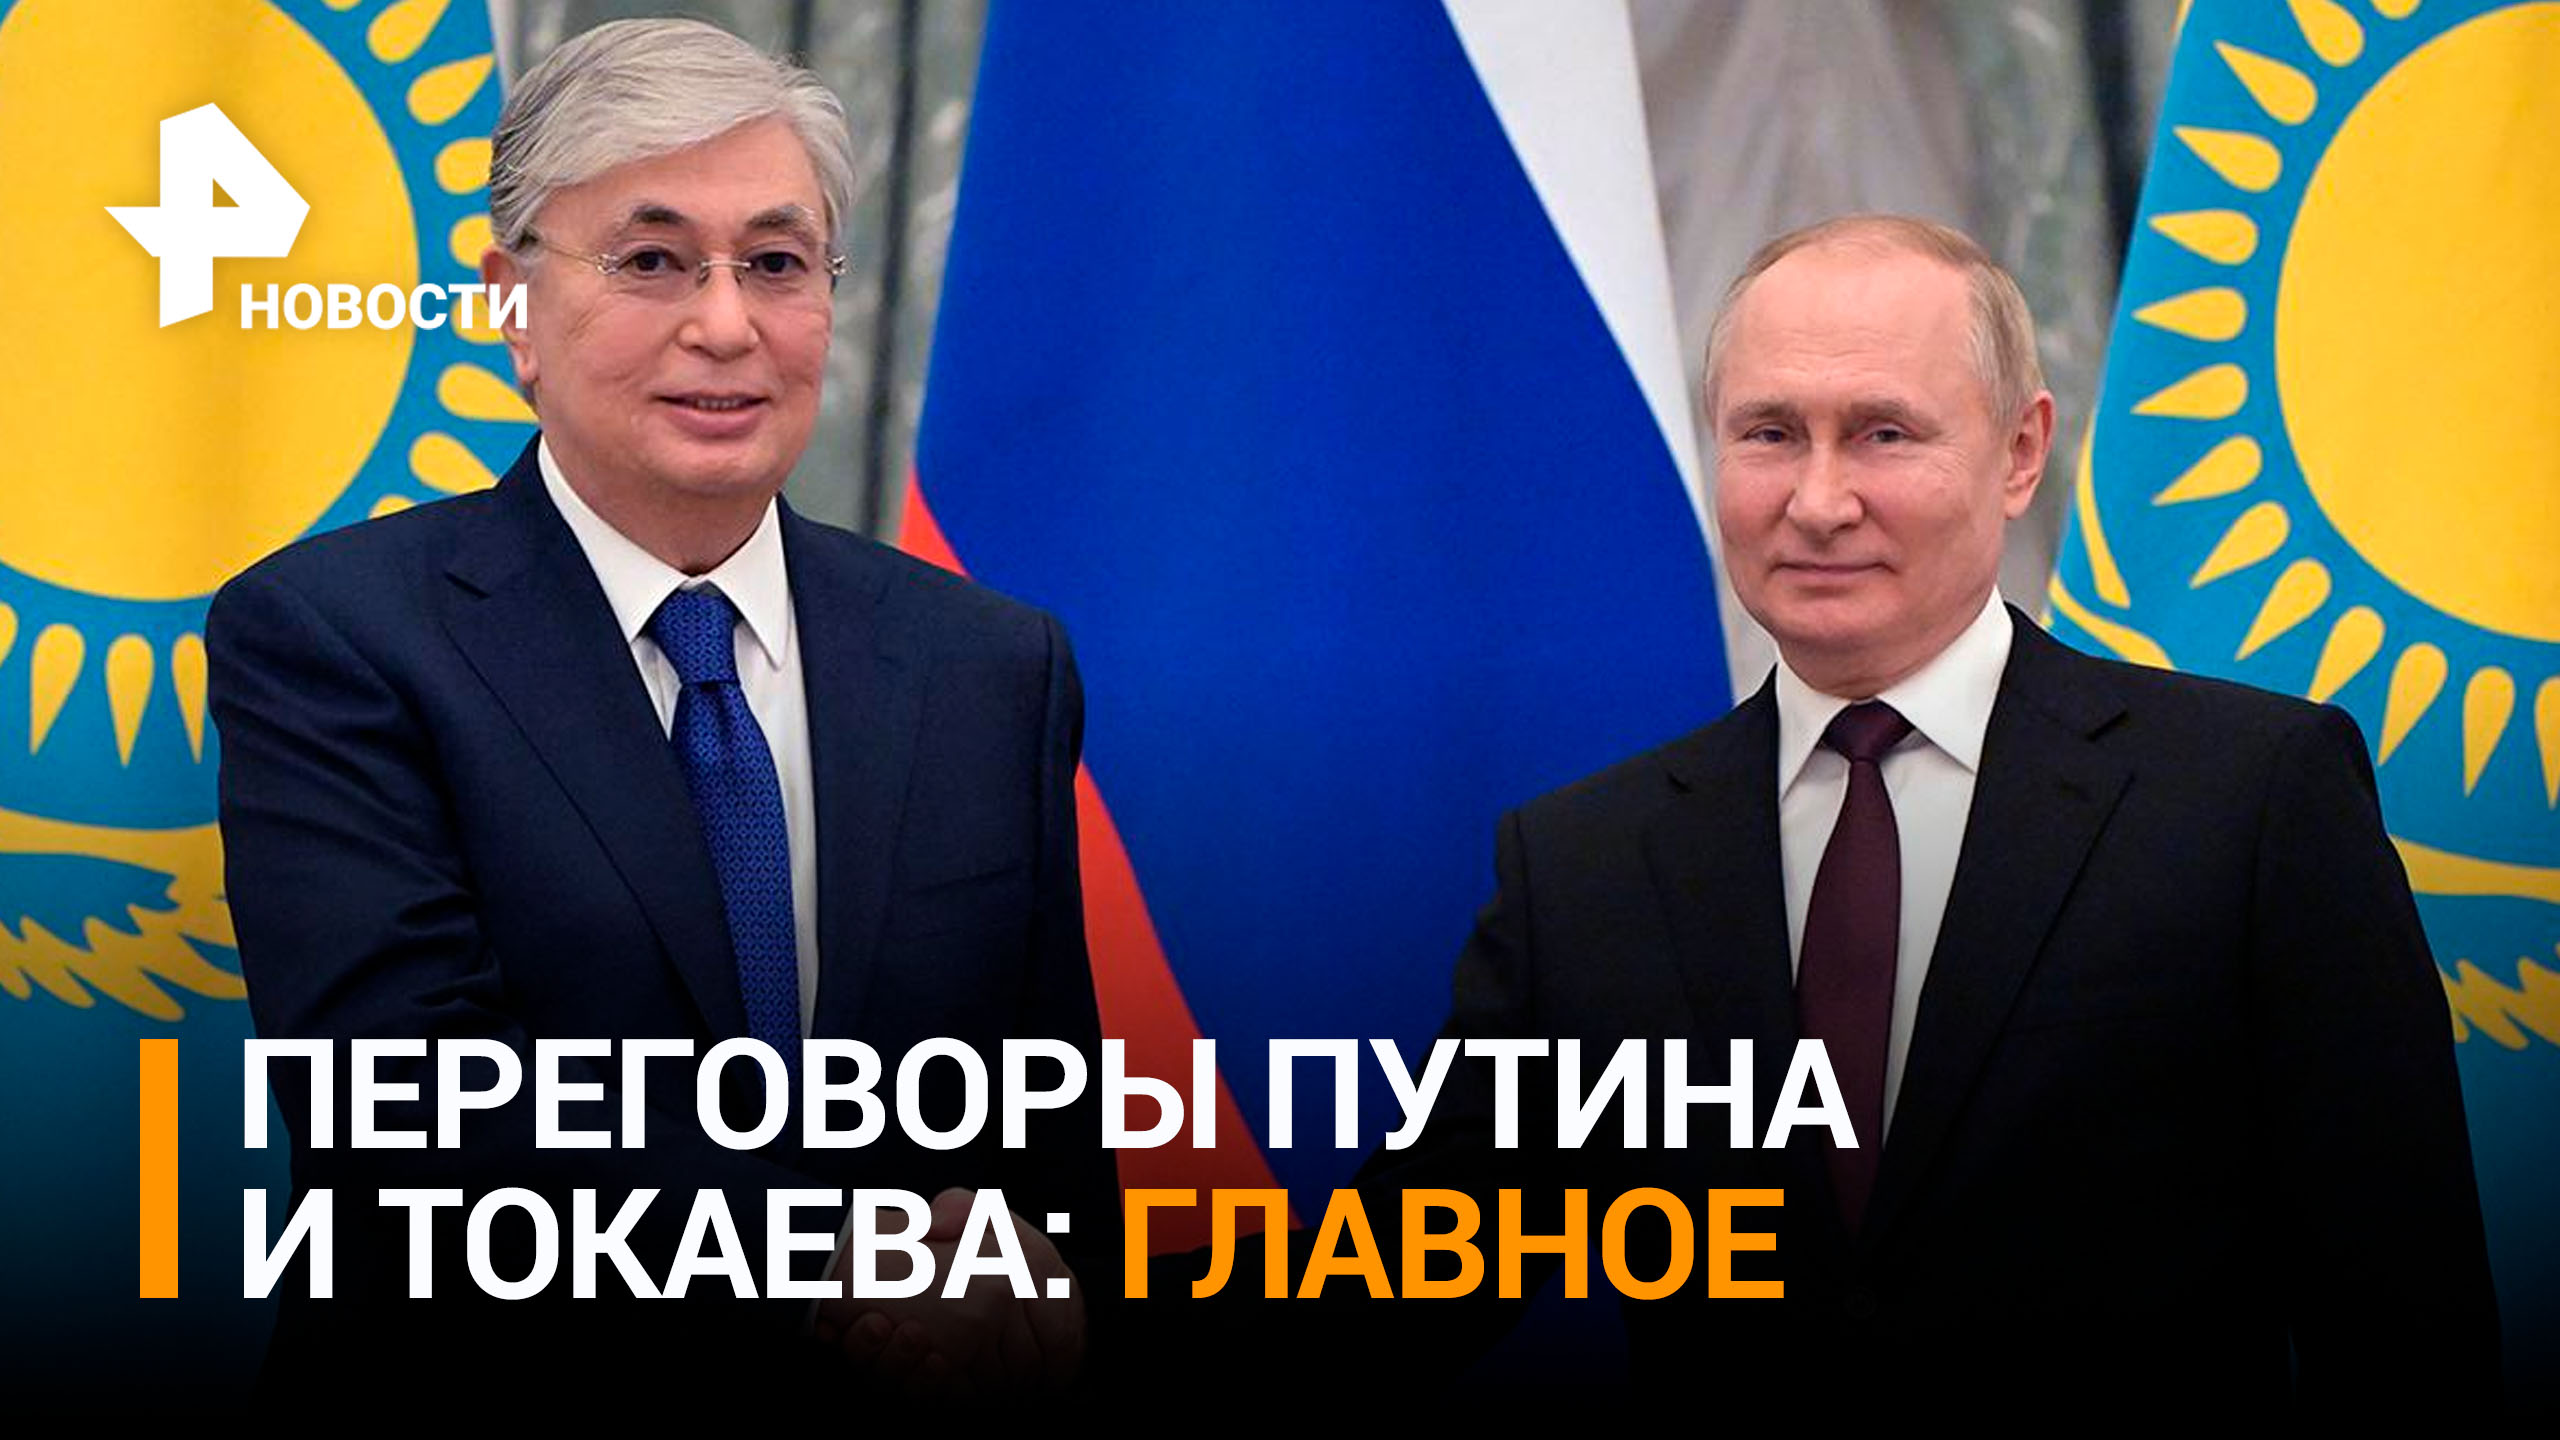 Президент заявил, что РФ остается одним из крупнейших инвесторов в казахстанскую экономику / РЕН